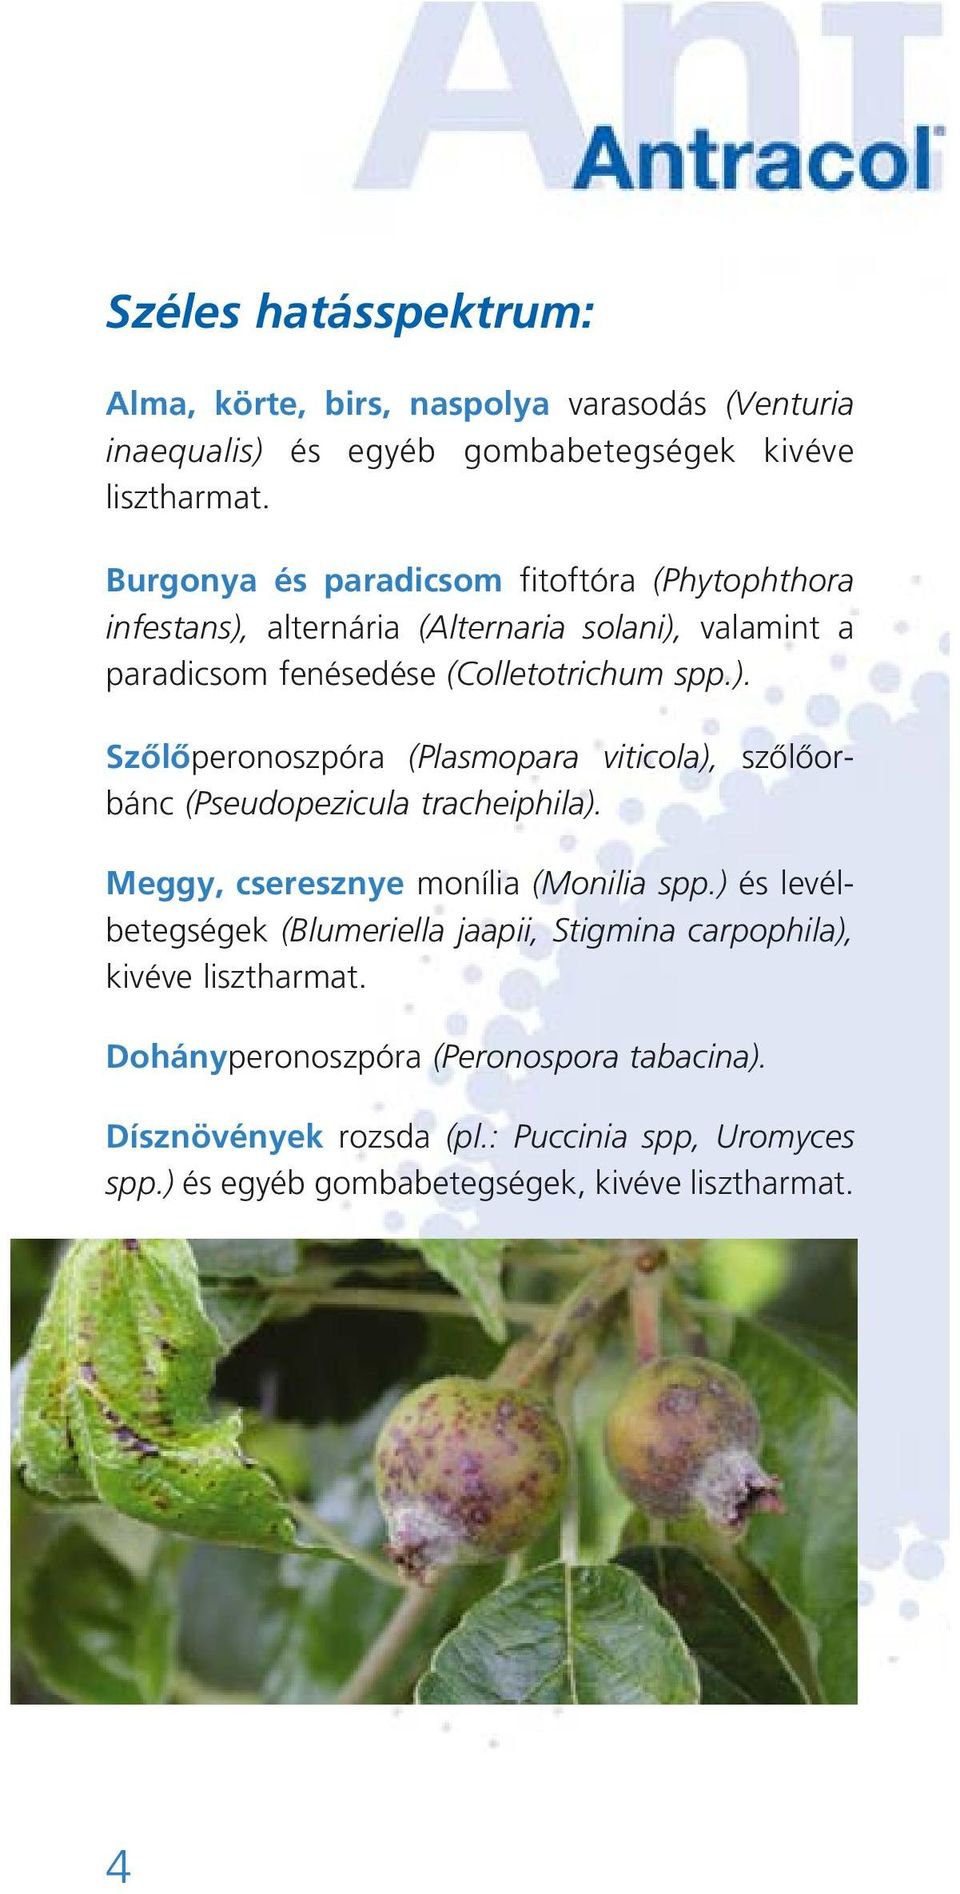 Meggy, cseresznye monília (Monilia spp.) és levélbetegségek (Blumeriella jaapii, Stigmina carpophila), kivéve lisztharmat.